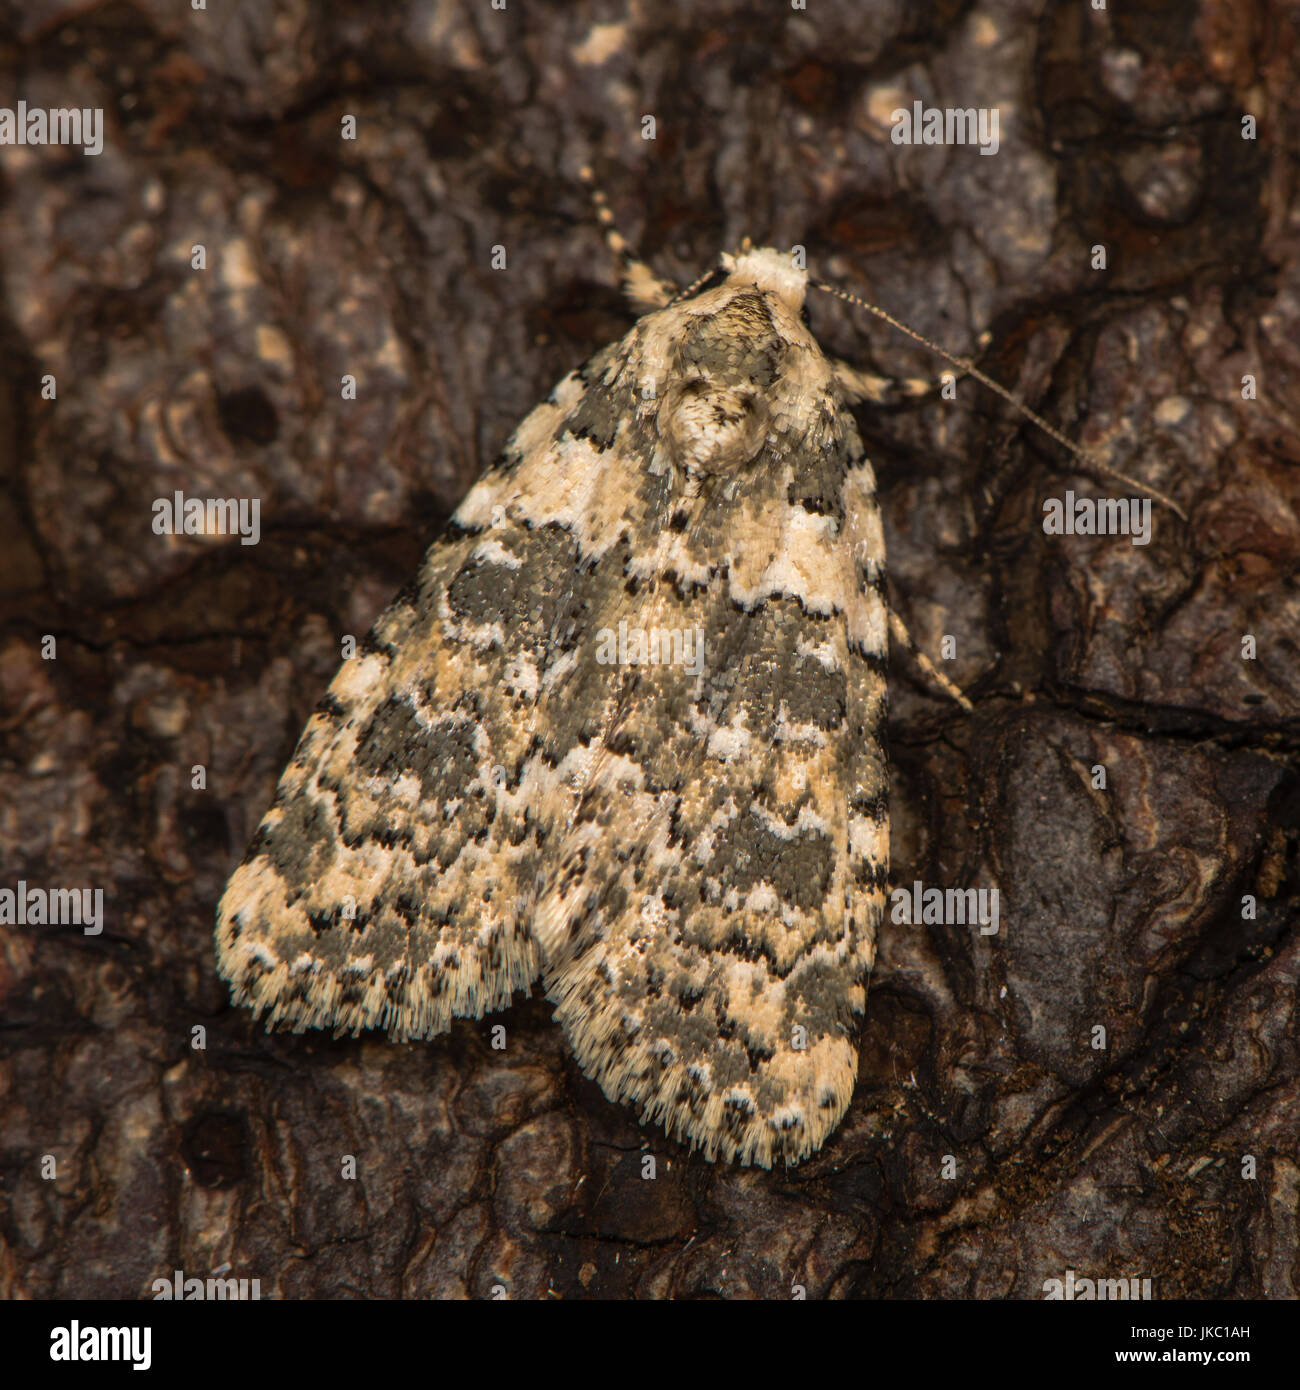 Marmorierte Schönheit (Bryophila Domestica) ruht auf Rinde. Britische Motte in der Familie Noctuidae angezogen, Licht in Bath, Somerset, UK Stockfoto